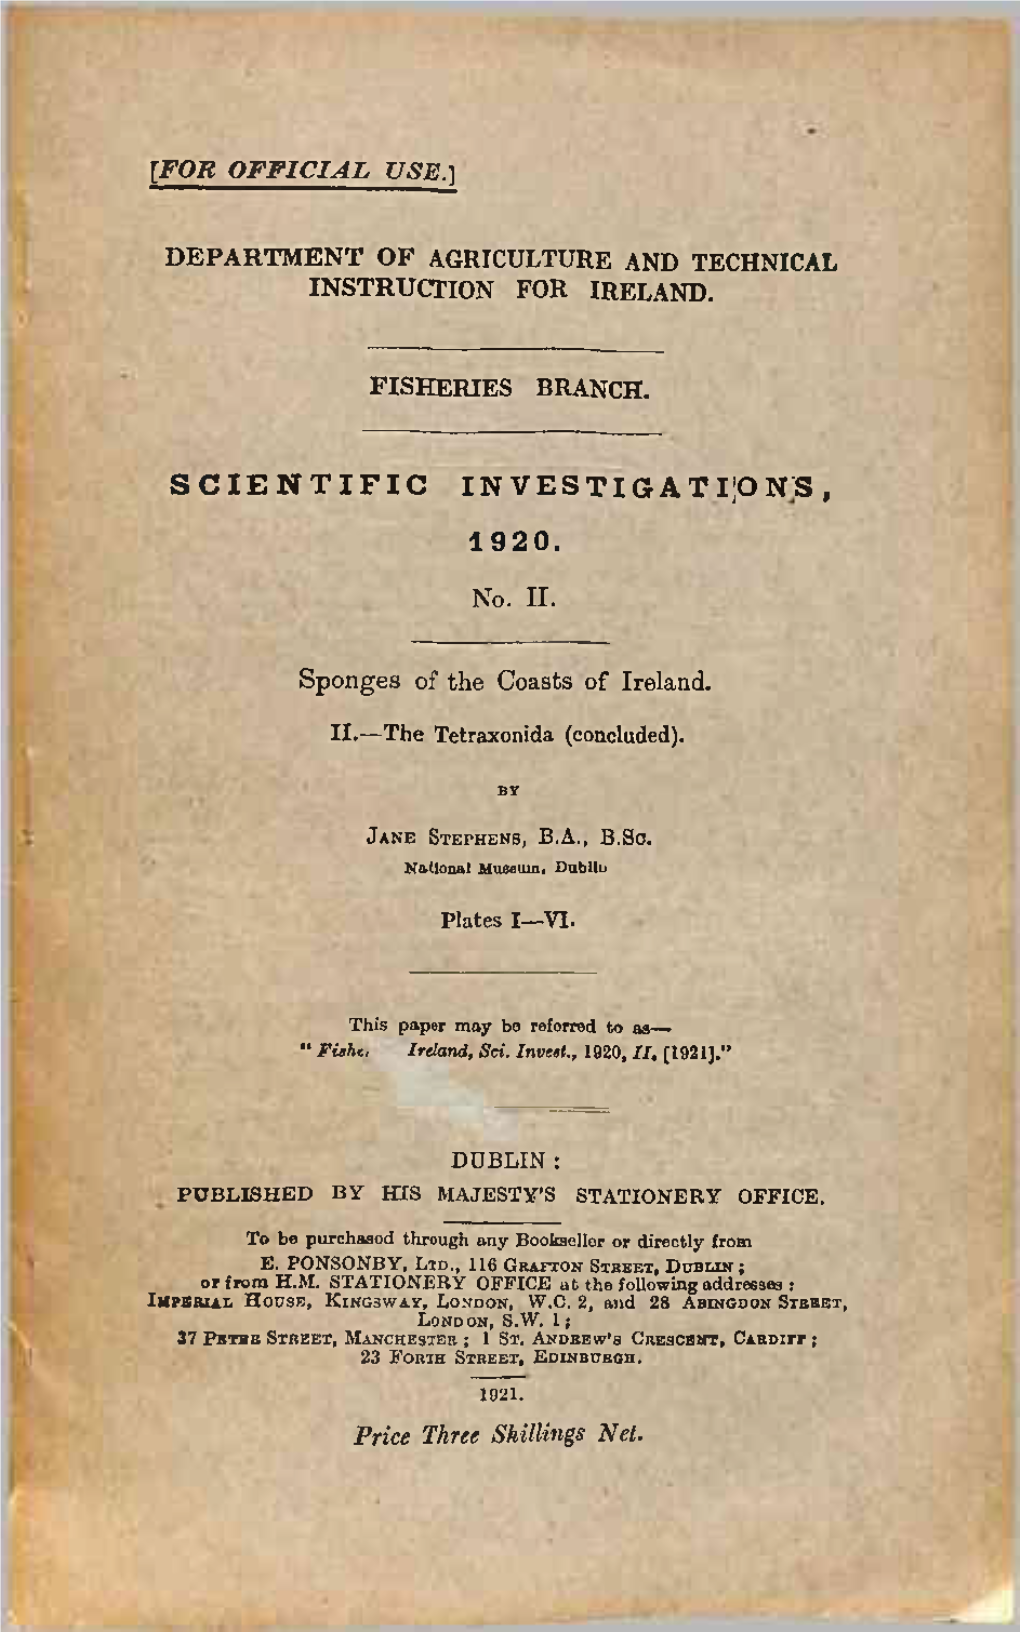 Scientific Investigation's, 1920